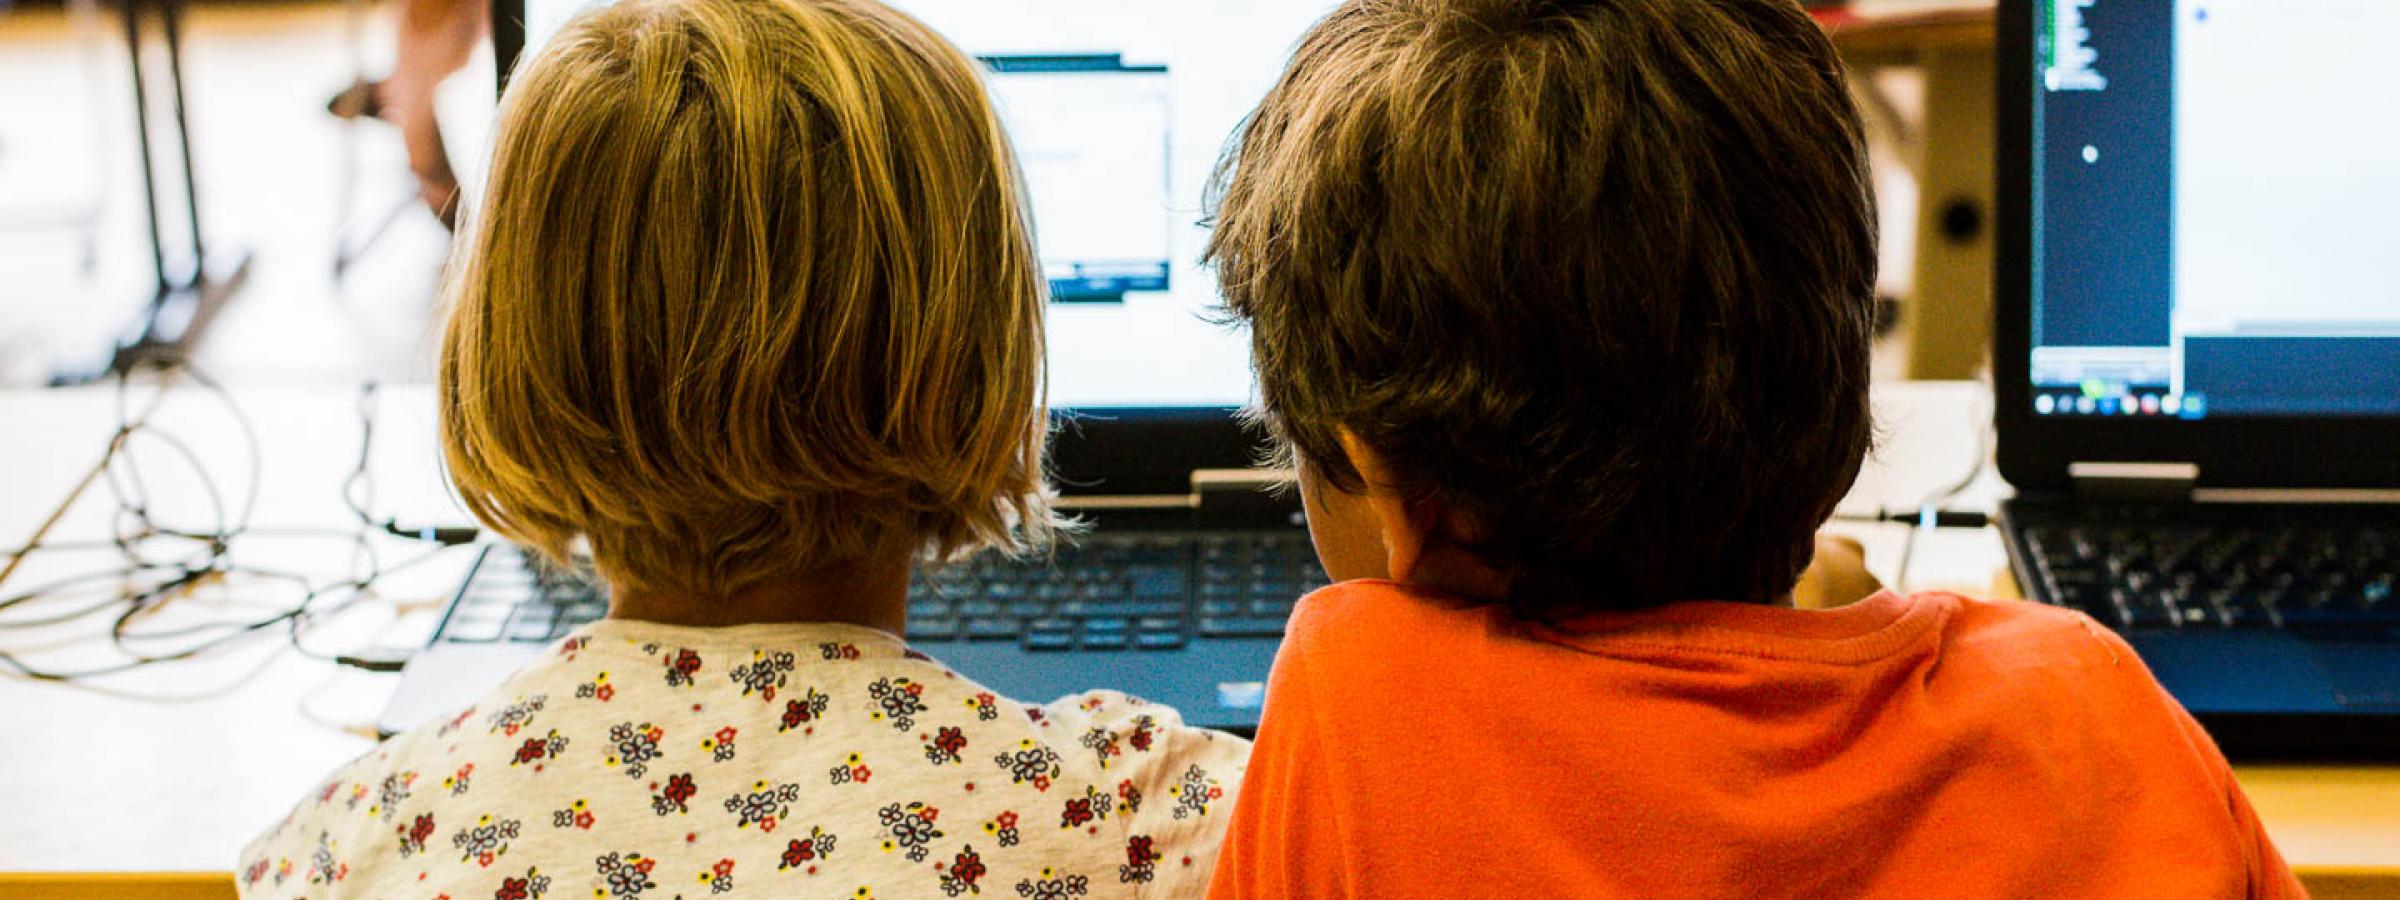 Jongen en meisje werken samen op een laptop